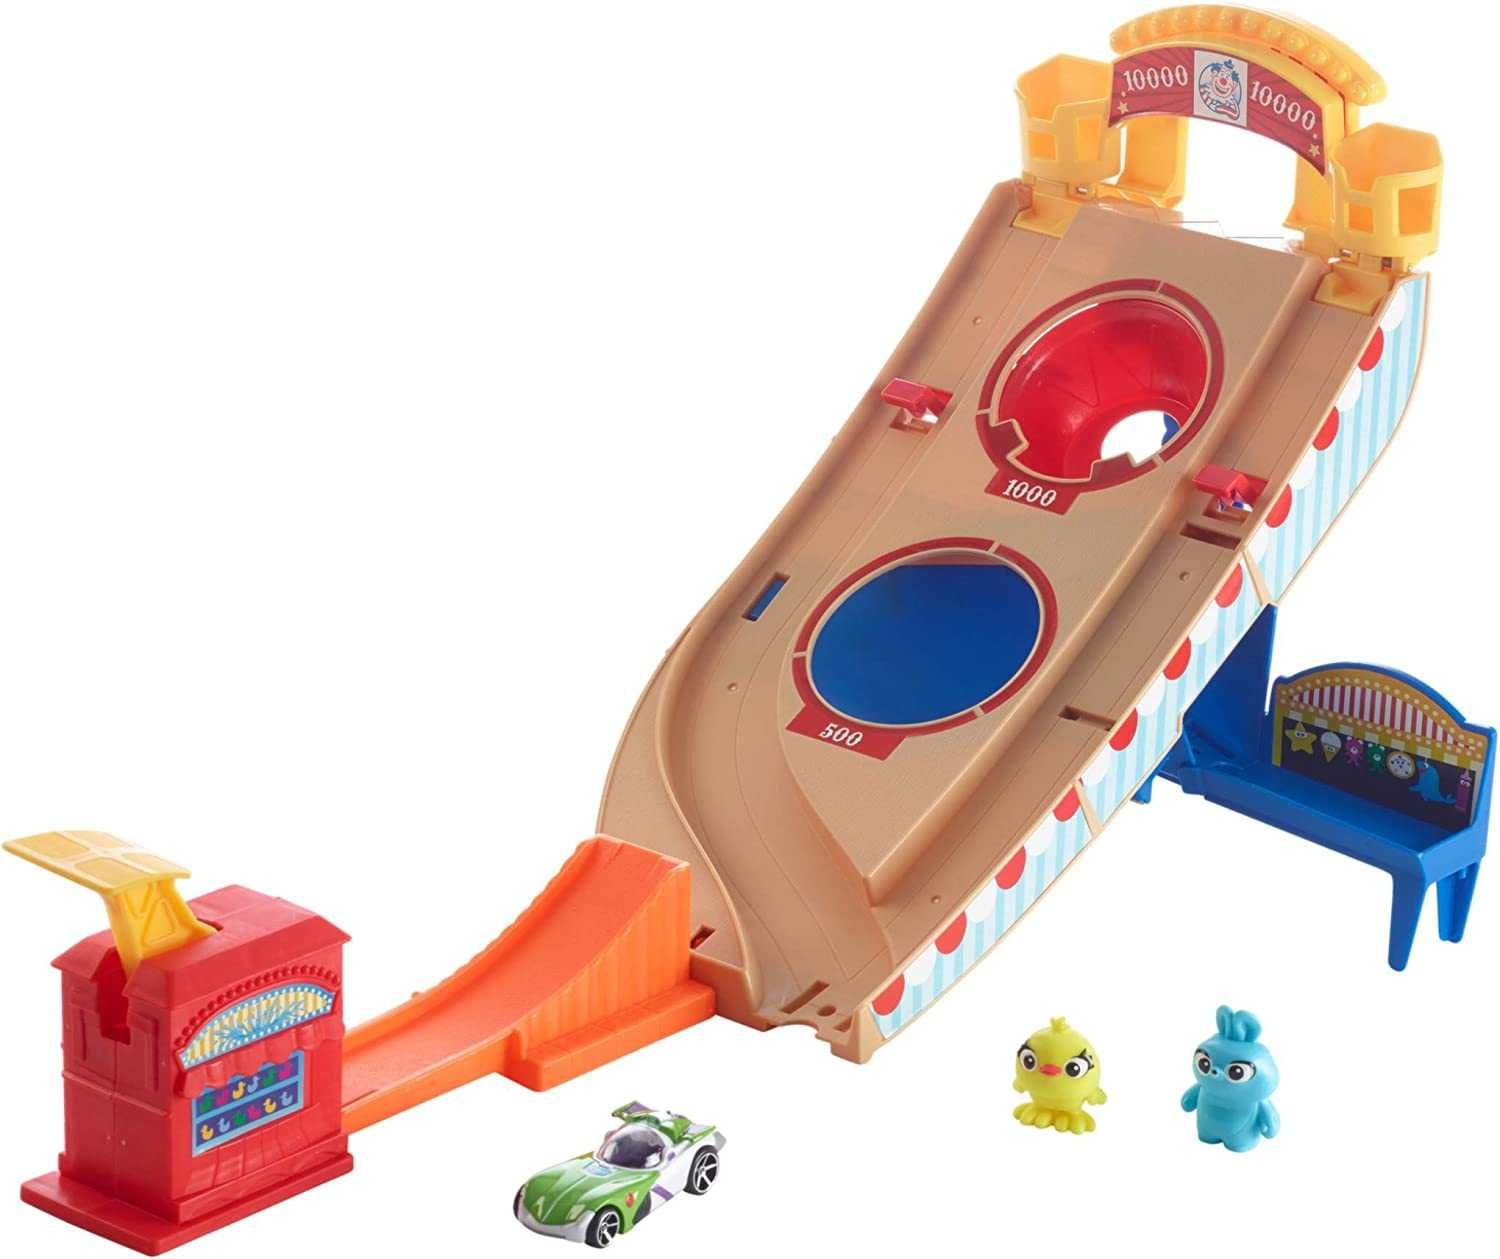 ОРИГИНАЛ! Трек Хот Вилс Hot Wheels История игрушек 4 Disney Pixar Toy